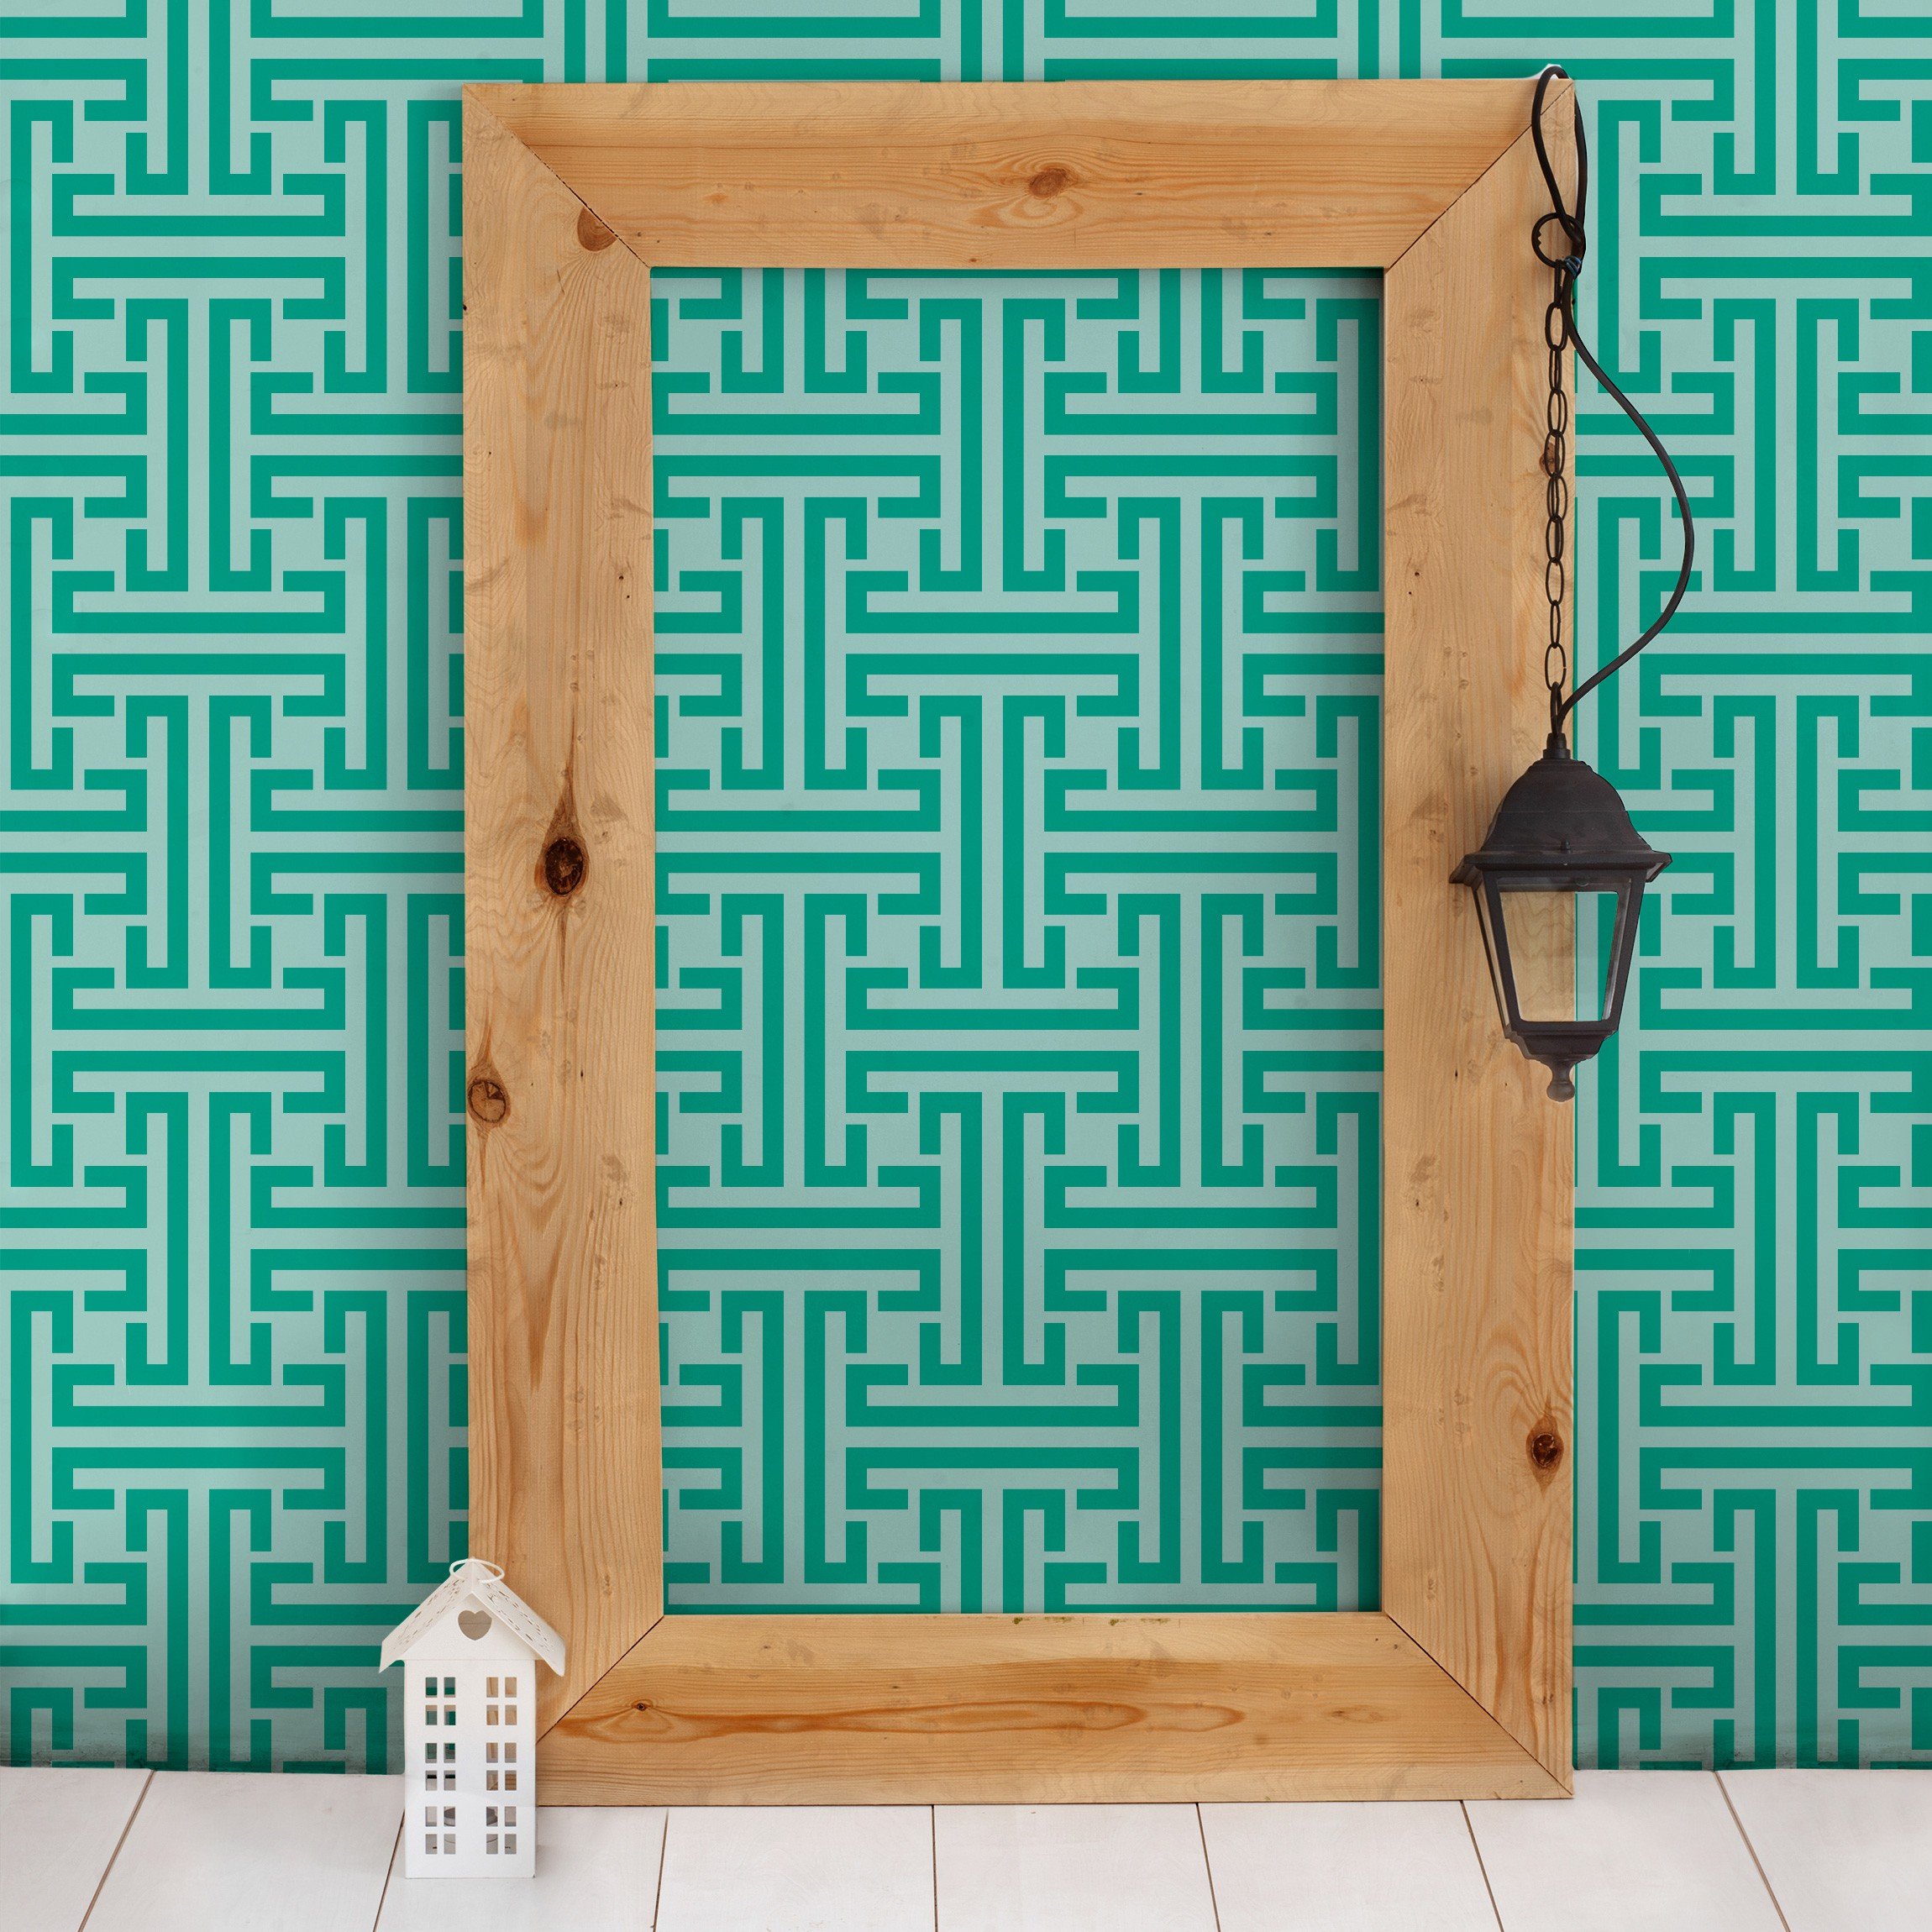 Apalis Vliestapeten Dekoratives Labyrinth Mustertapete Breit | Vlies Tapete Wandtapete Wandbild Foto 3D Fototapete für Schlafzimmer Wohnzimmer Küche | blau, 98178